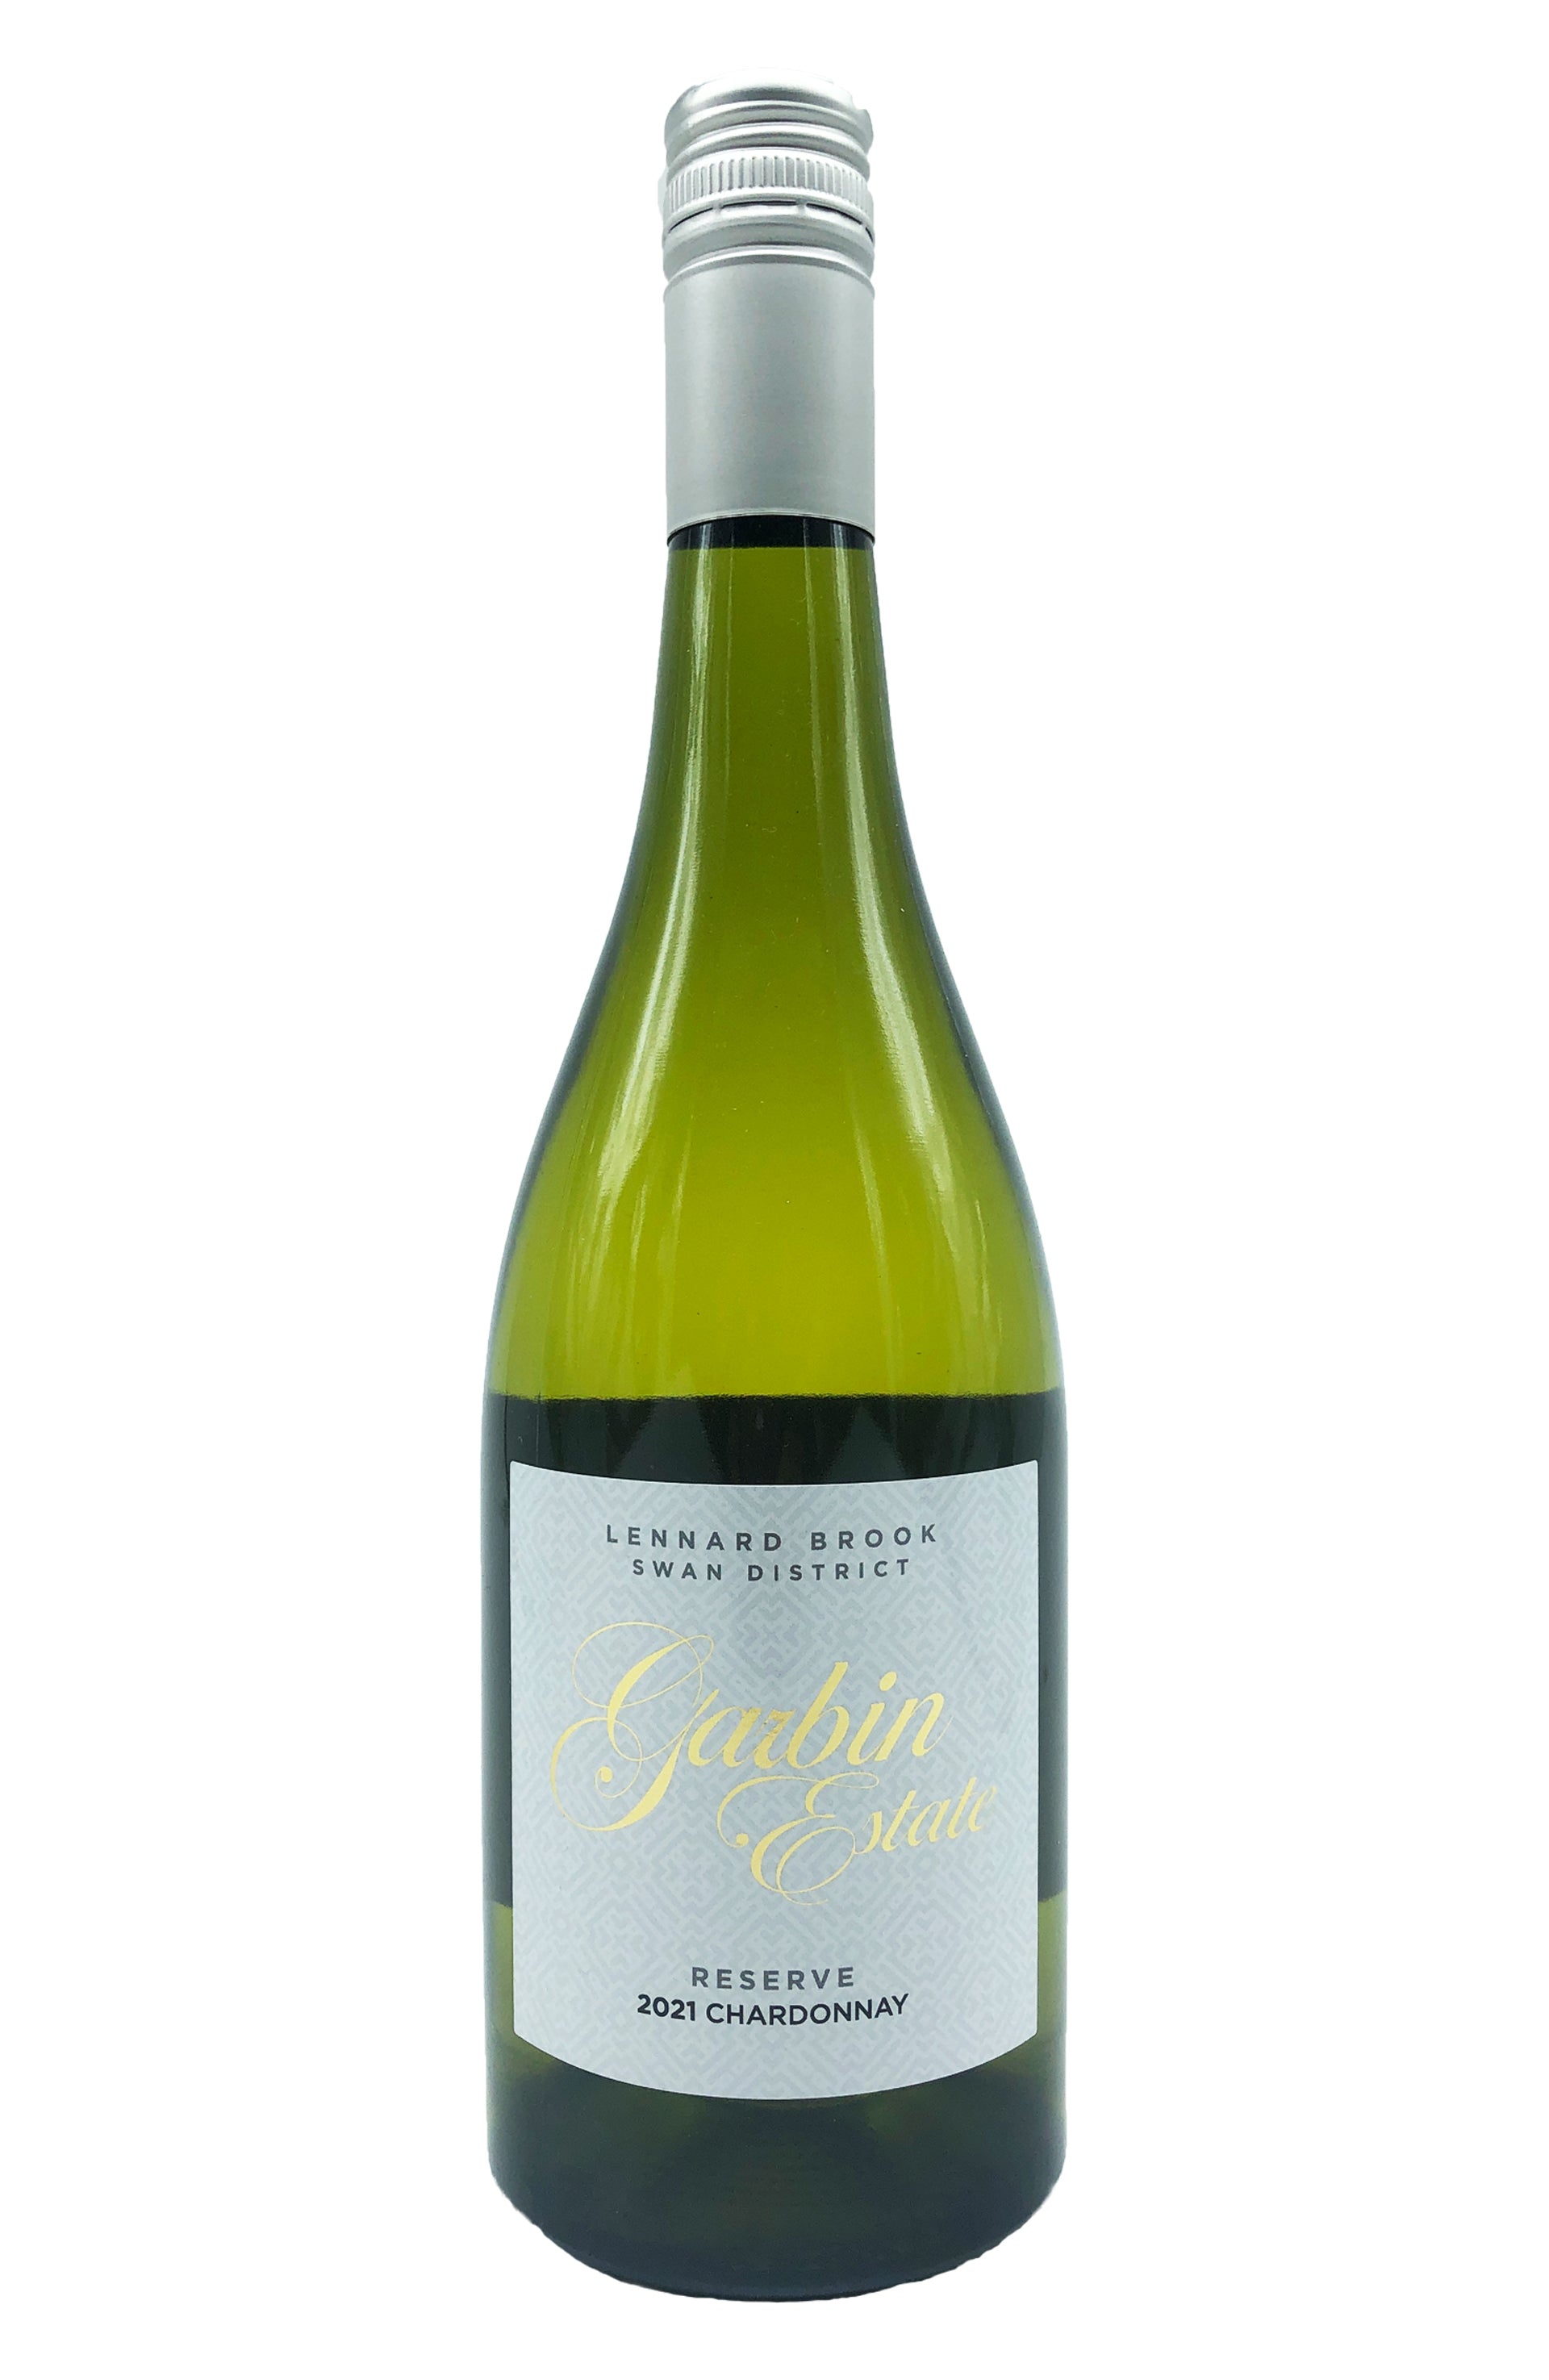 A bottle of Garbin Estate Wines Reserve Chardonnay 2021